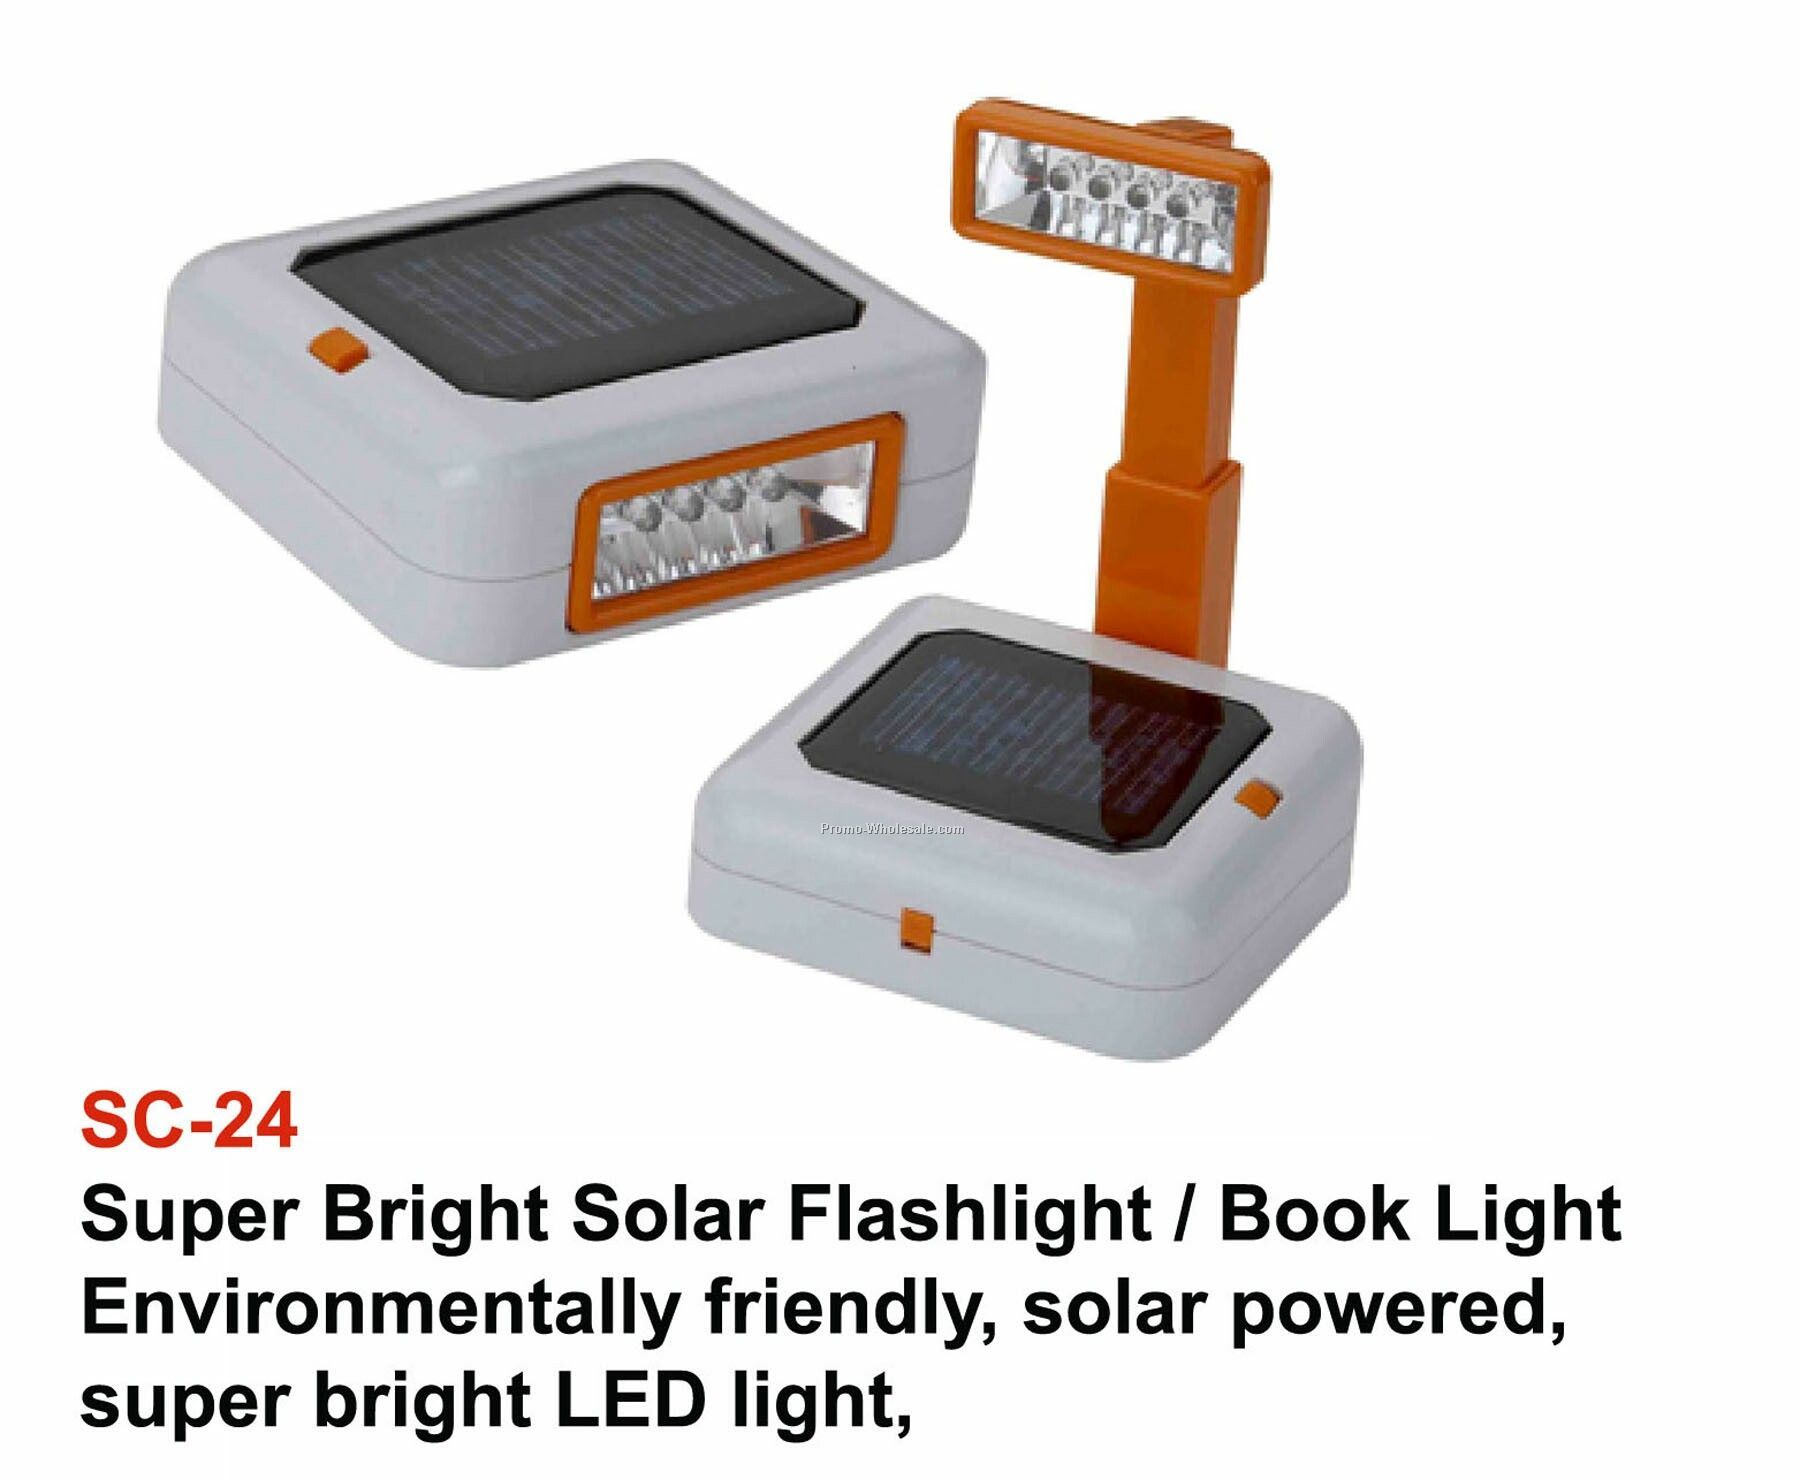 Book Light, Pocket Light, Desk Light, Super Bright